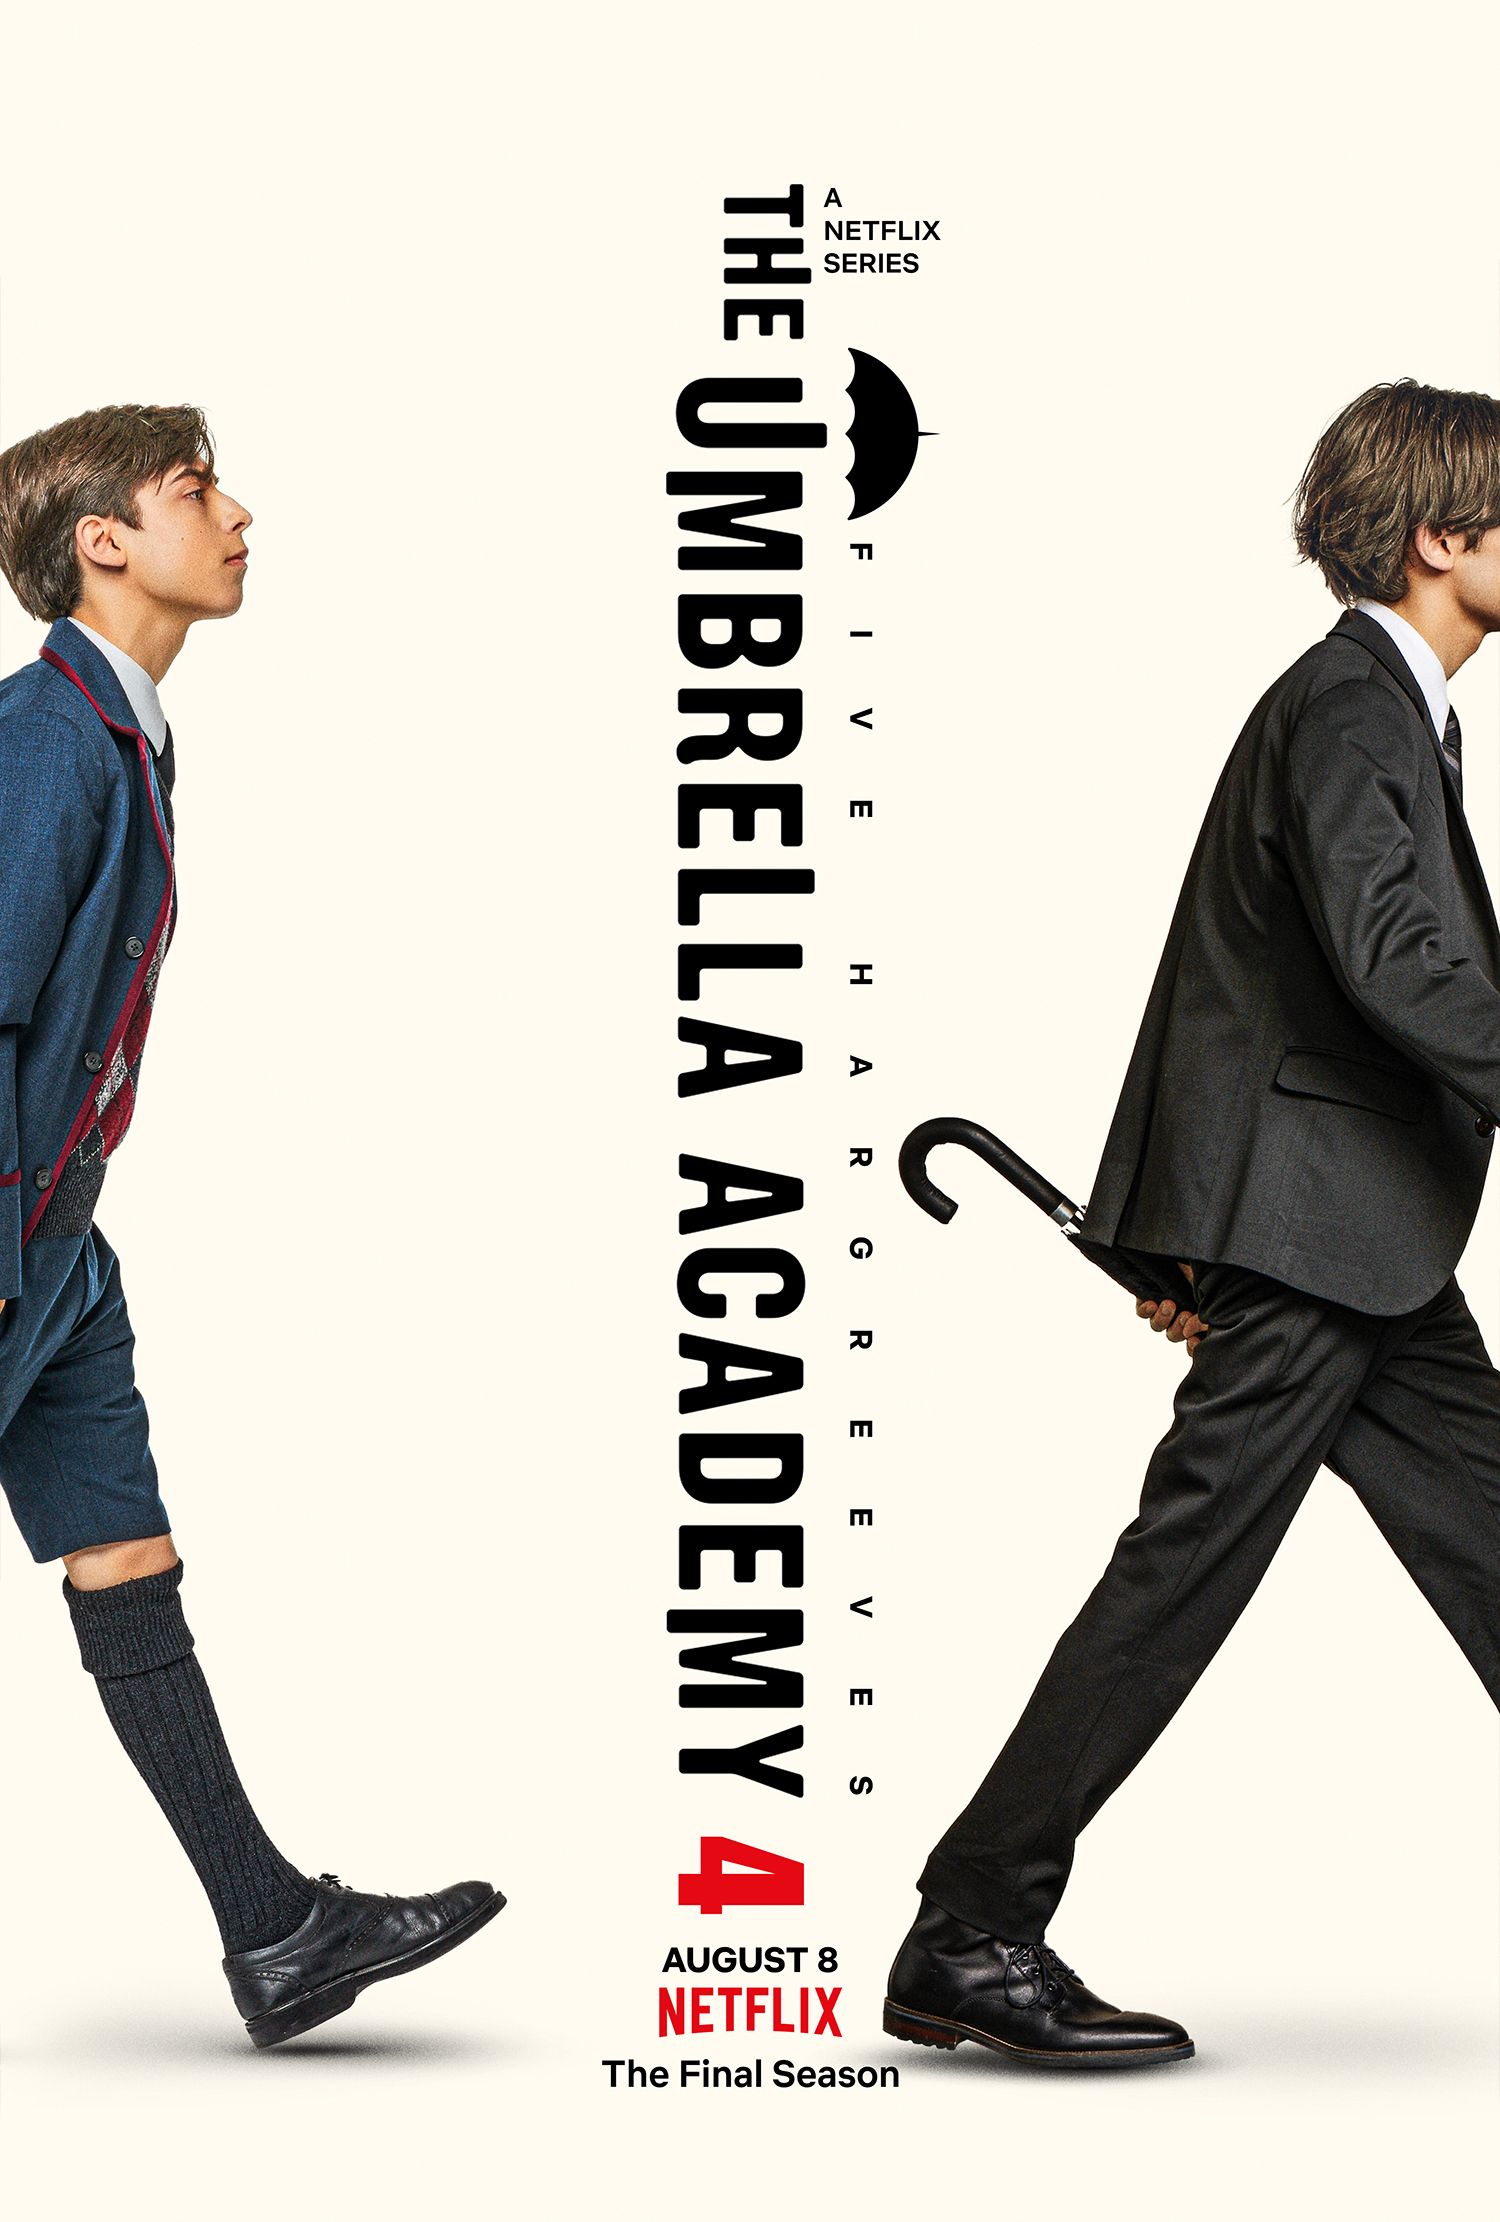 El póster de la temporada 4 de Umbrella Academy muestra a cinco personas caminando